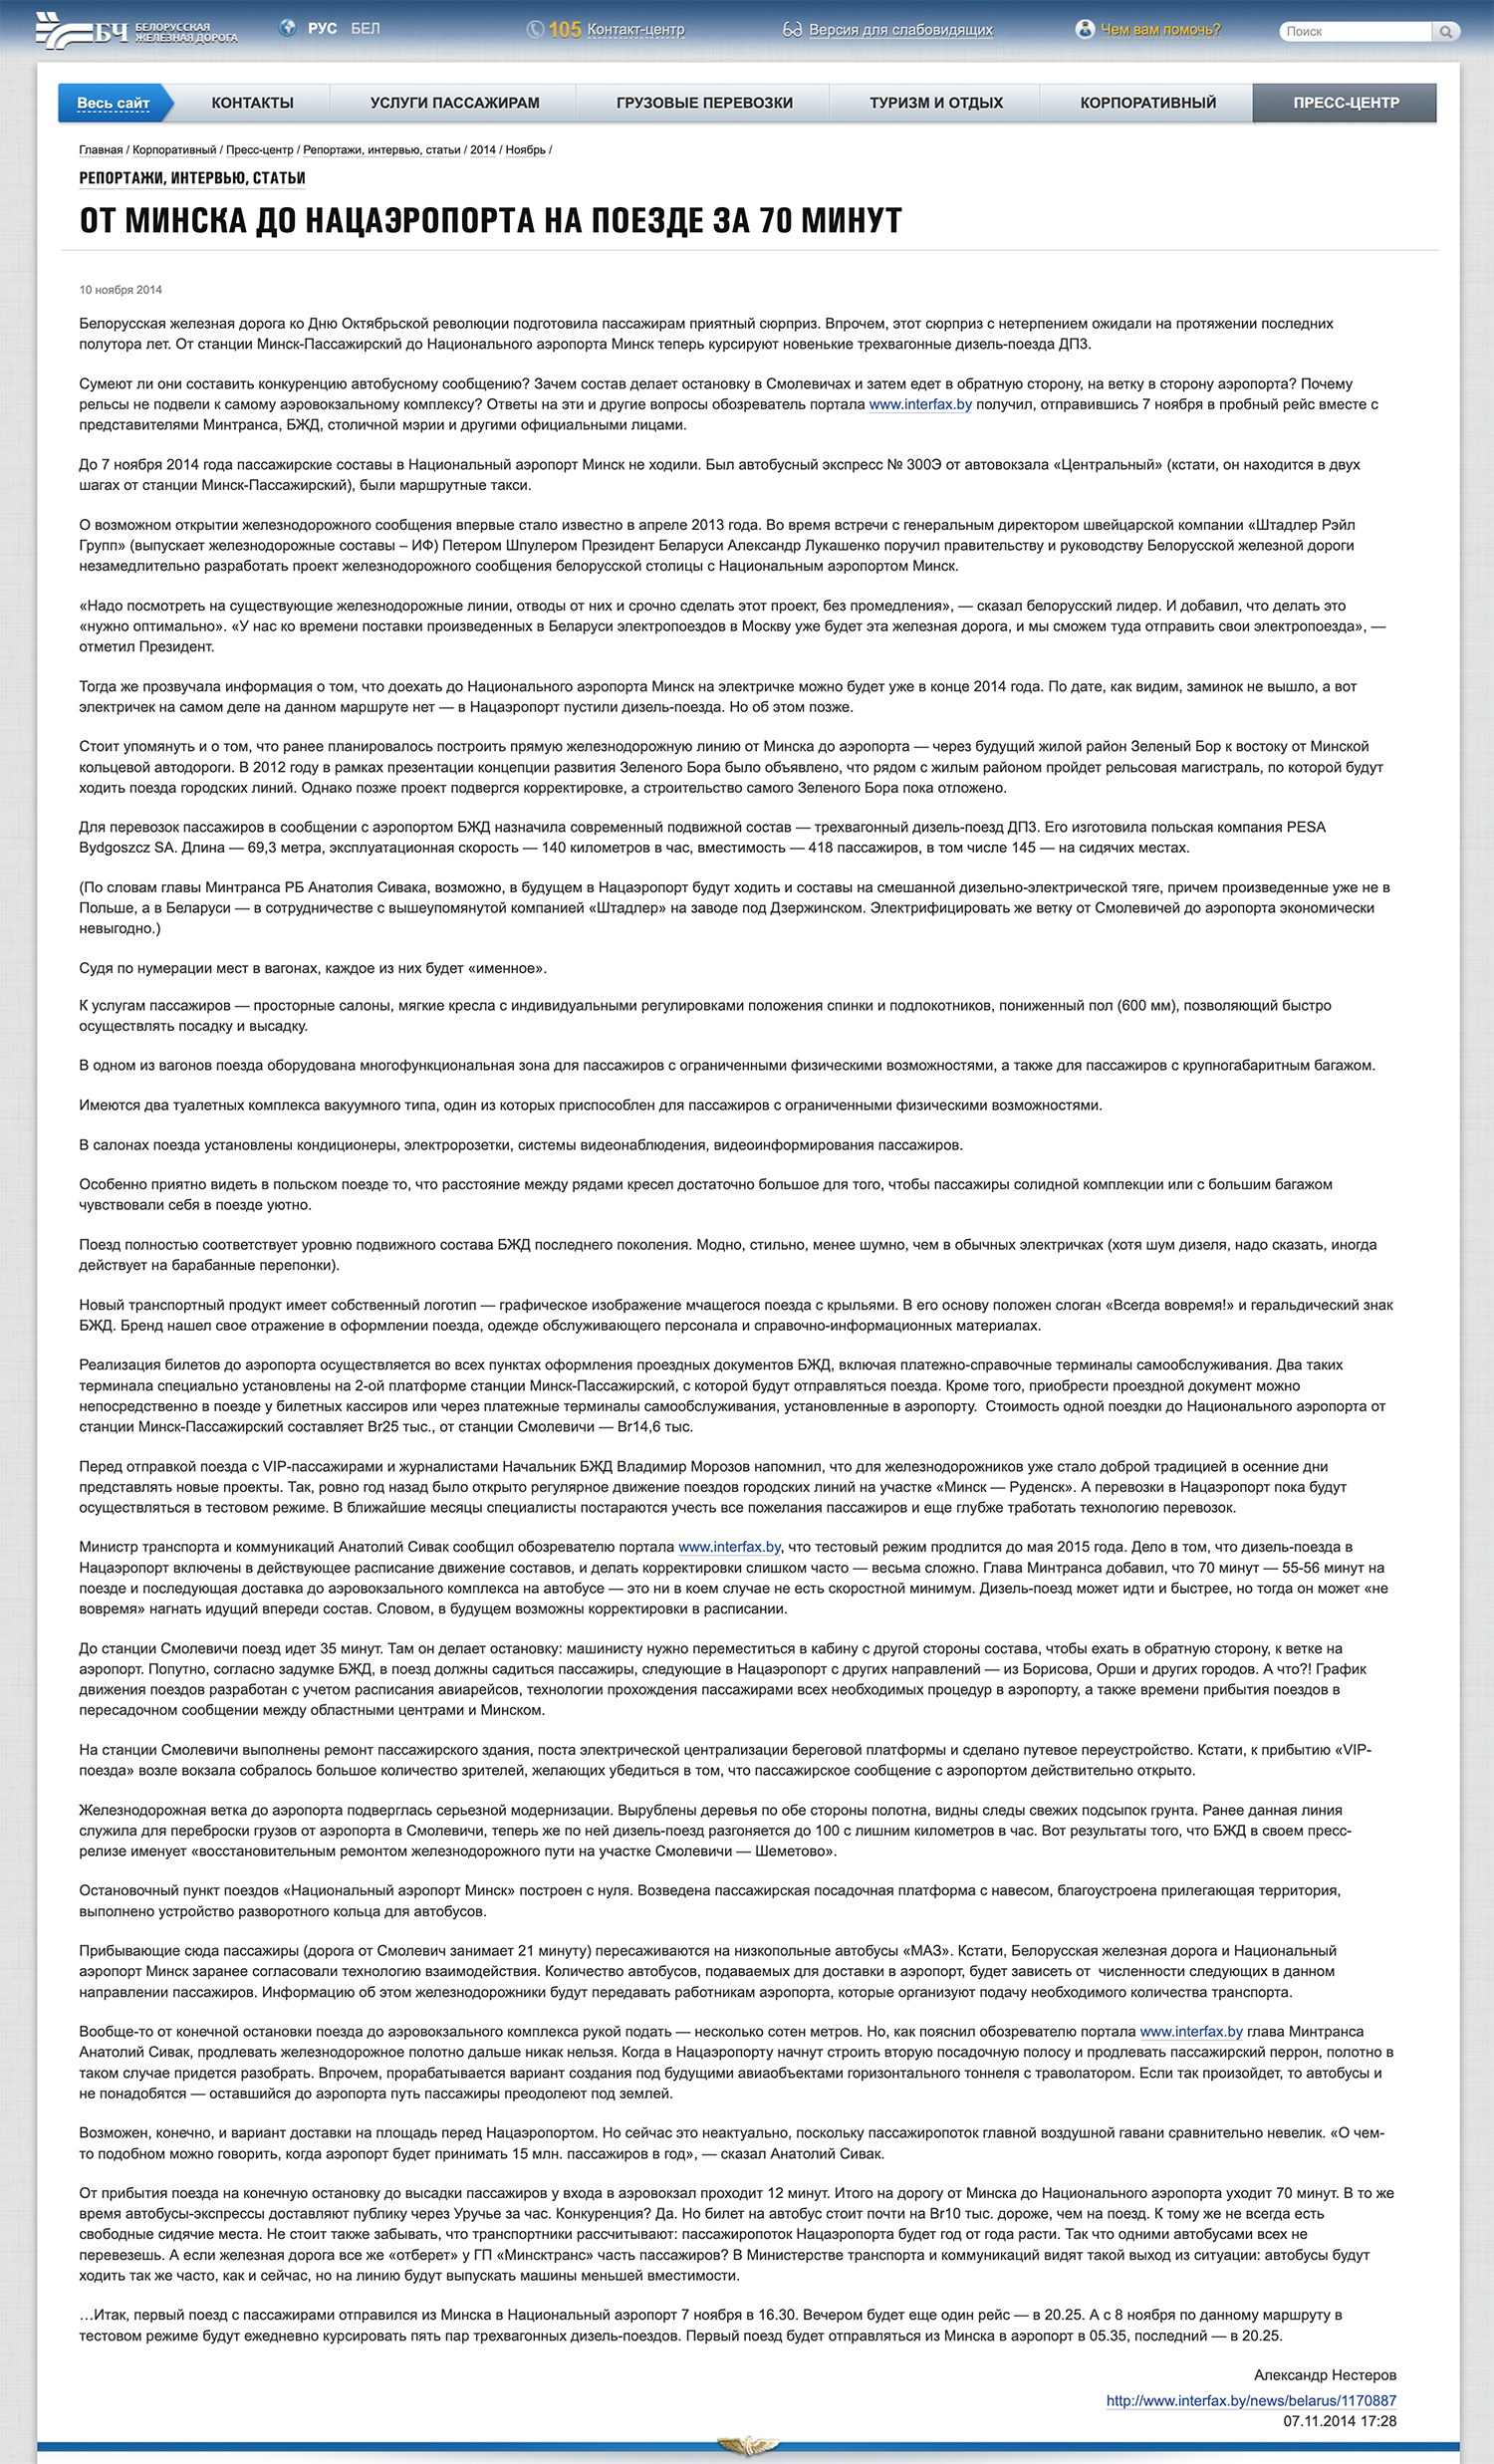 Скриншот публикации на веб-сайте БЖД от 10.11.2014 «От Минска до Нацаэропорта на поезде за 70 минут»